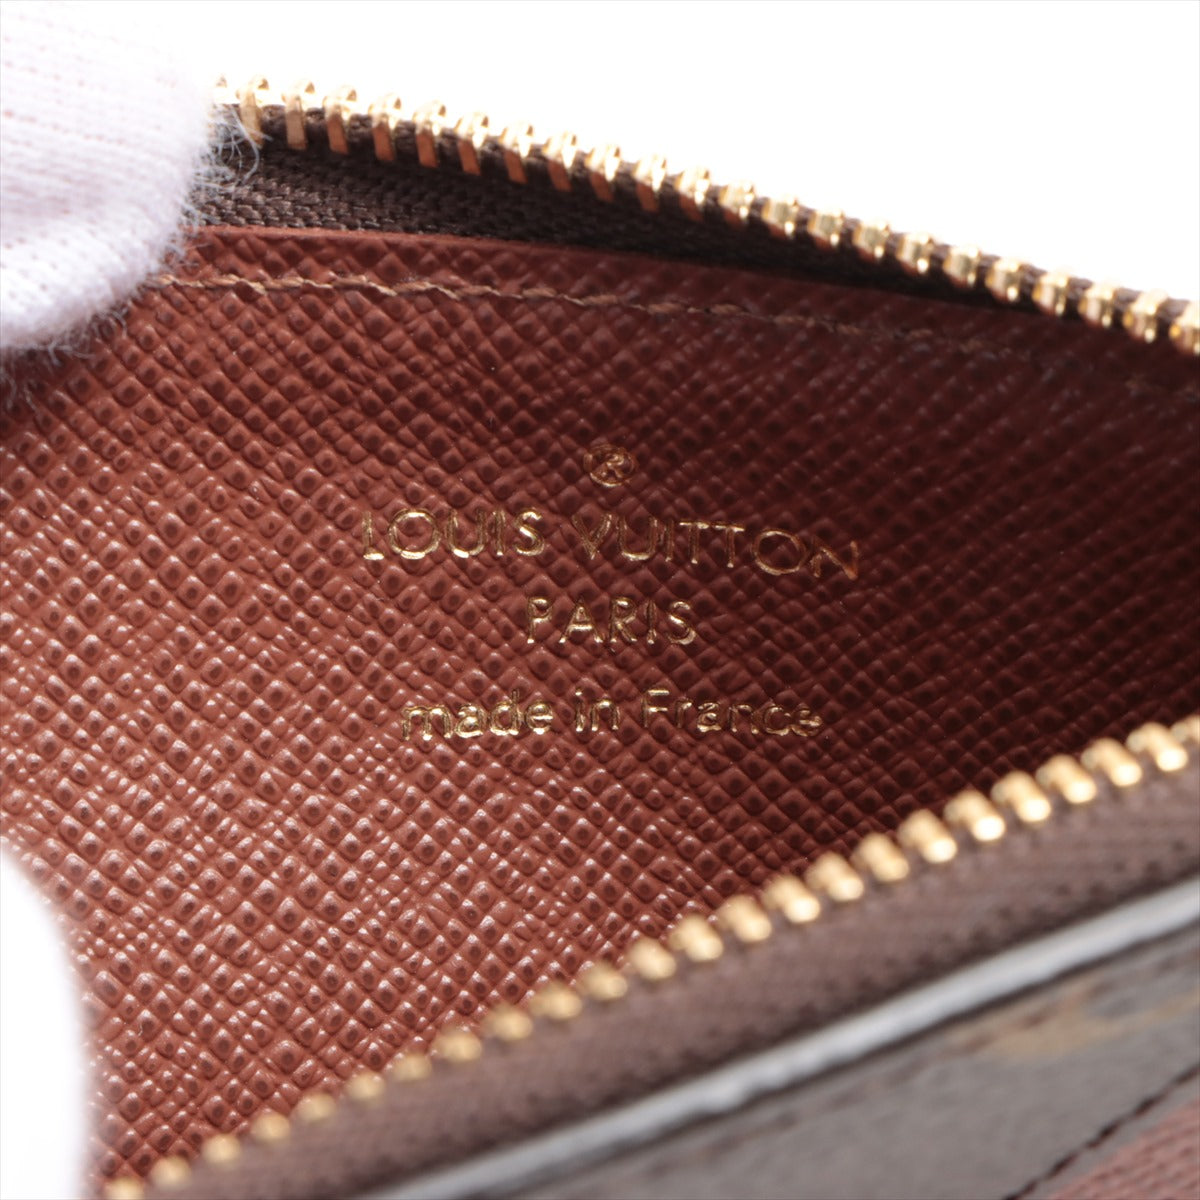 Louis Vuitton Monogram Port Jaeger Le Coultre Romy M81880 Brown Card Case